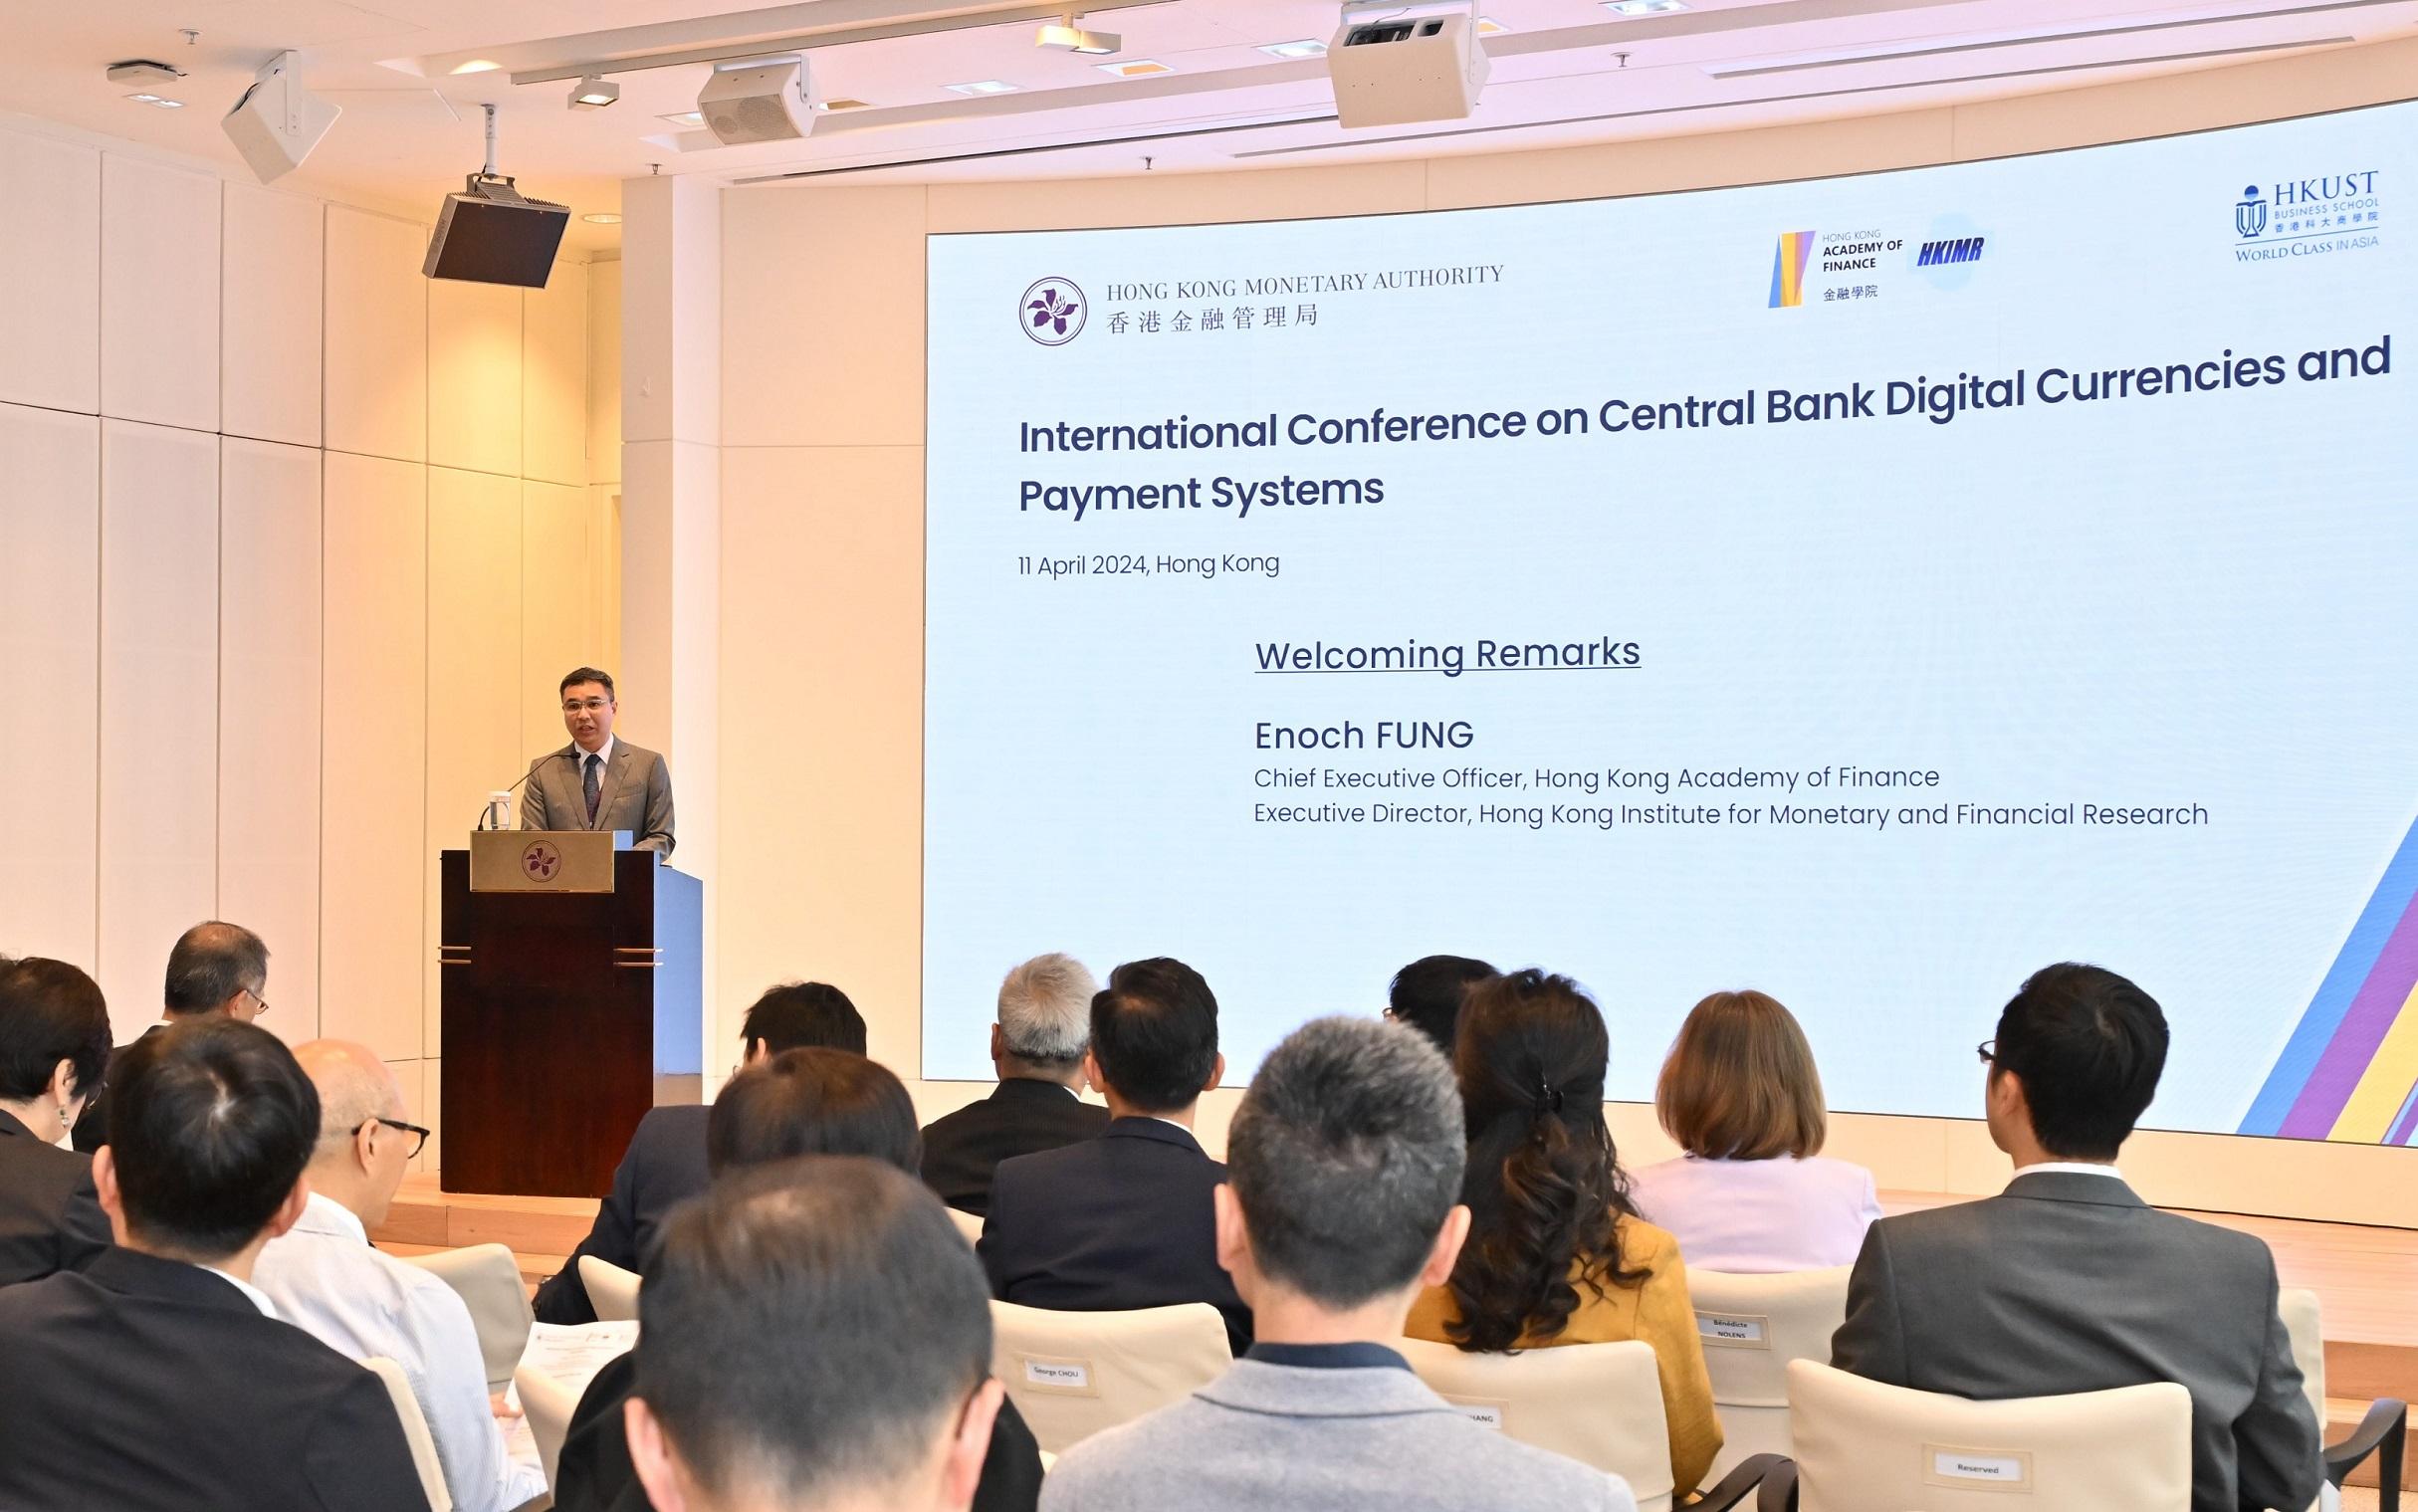 金融學院行政總裁及香港貨幣及金融研究中心執行主任馮殷諾在央行數碼貨幣和支付系統國際會議致歡迎辭。